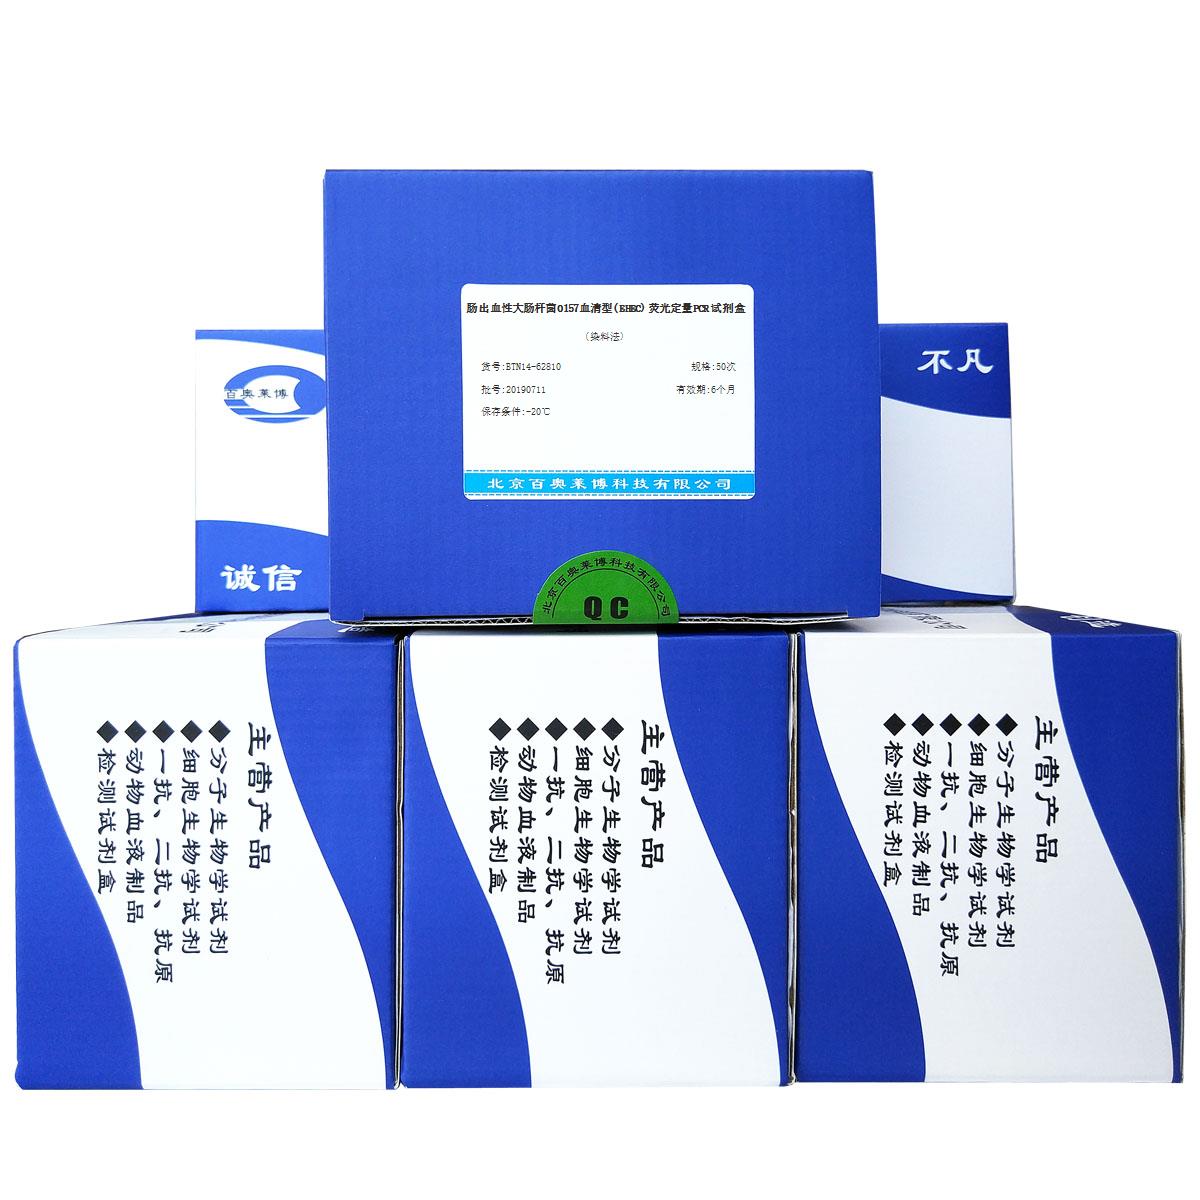 肠出血性大肠杆菌O157血清型(EHEC)荧光定量PCR试剂盒(染料法)